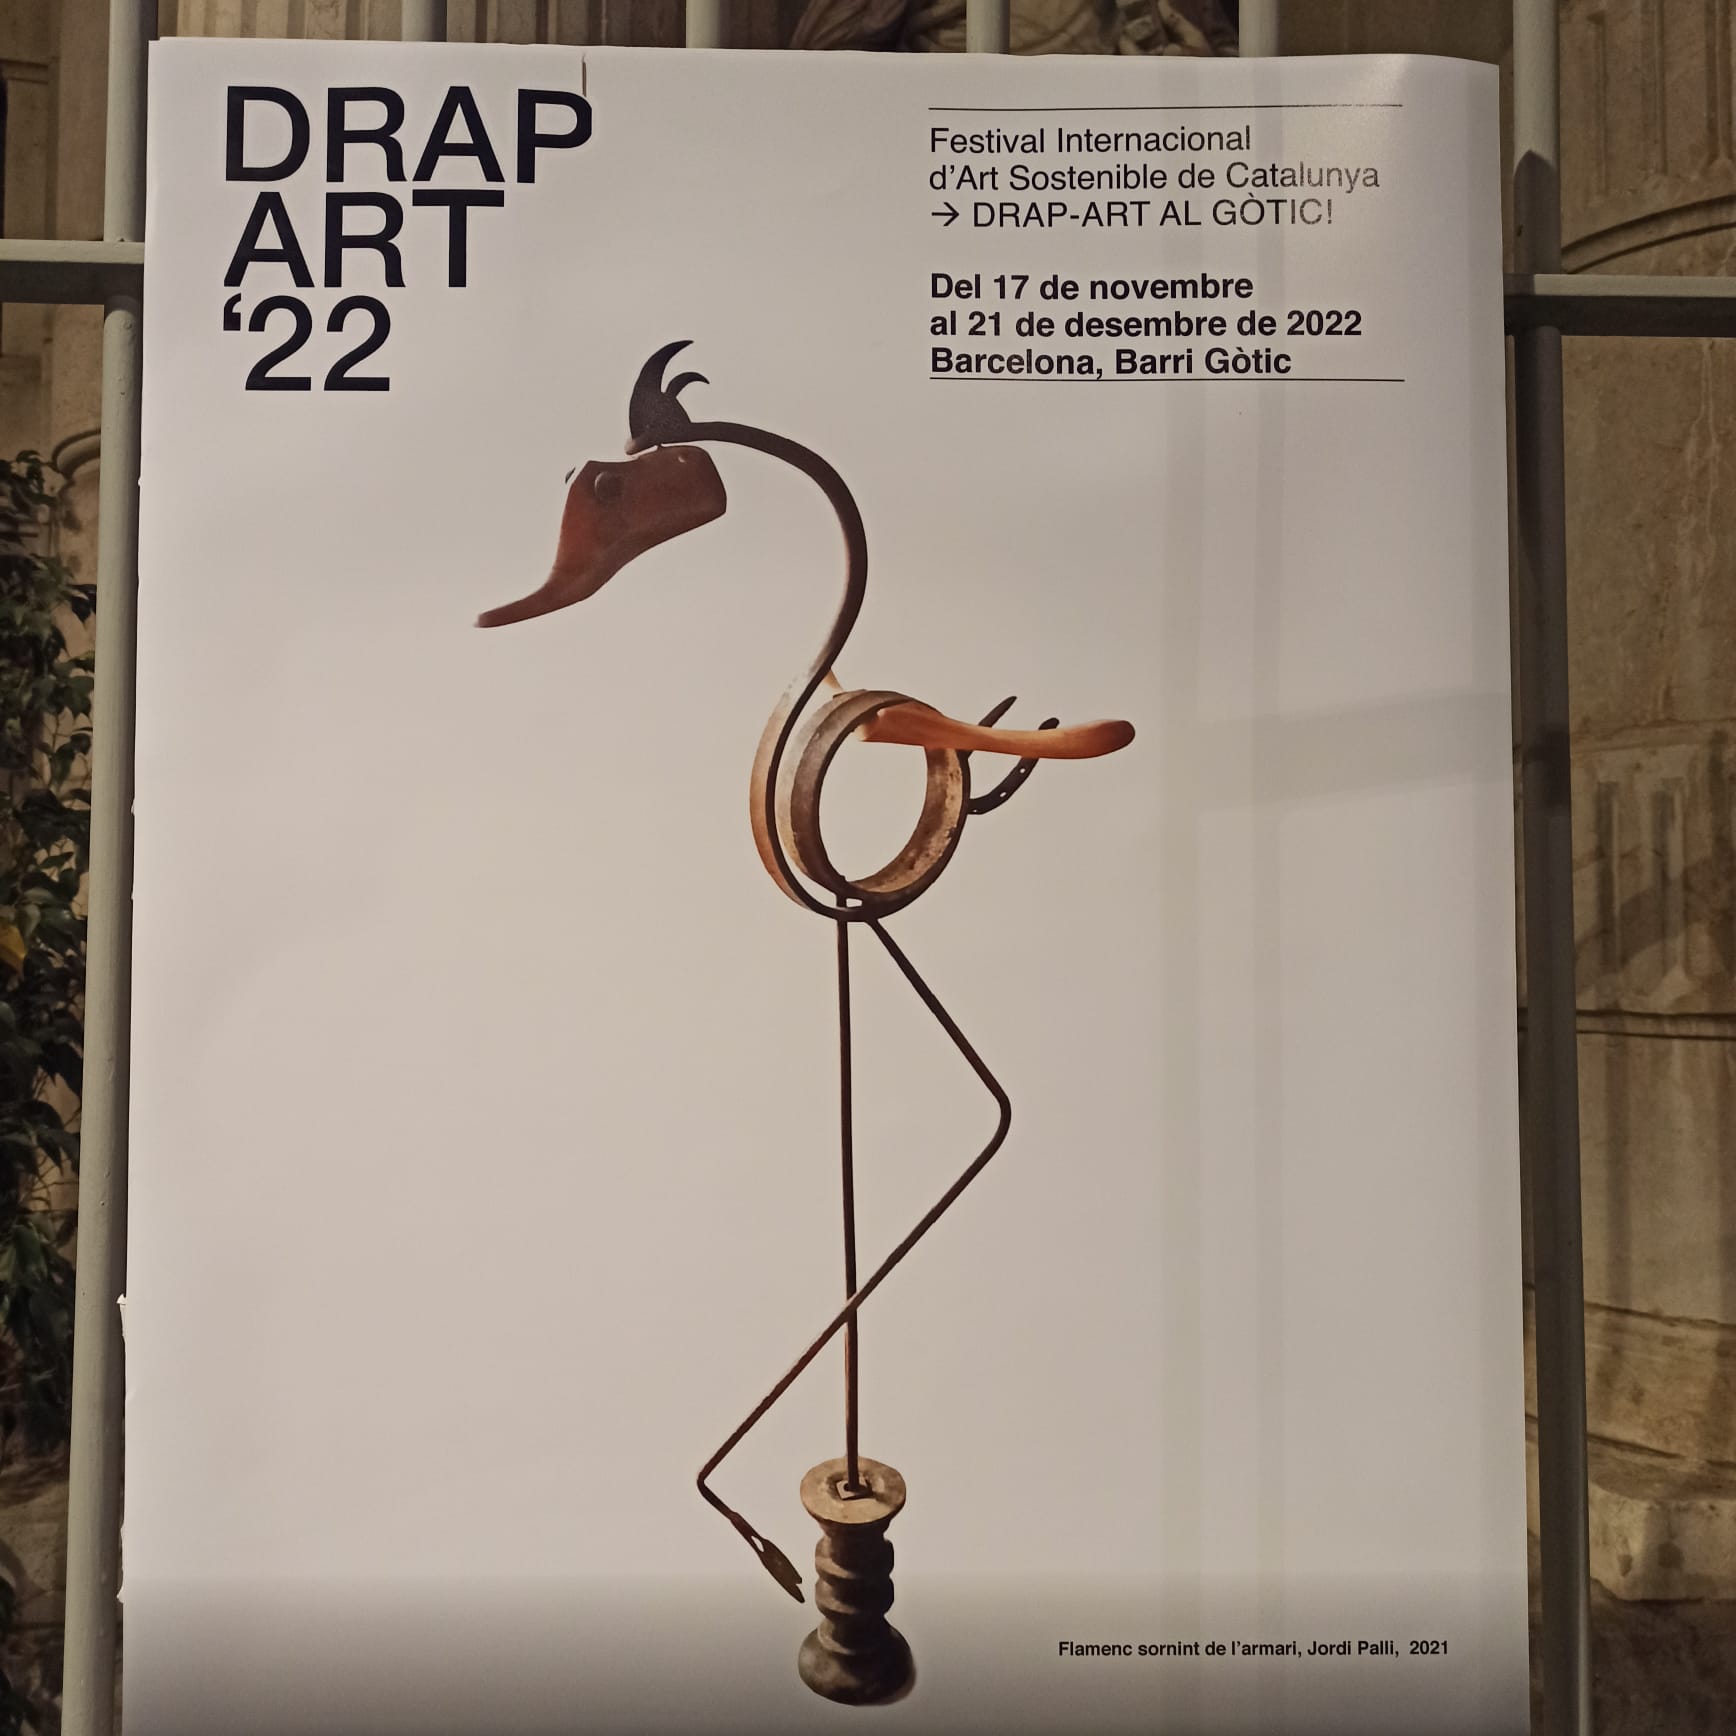 DRAP ART’22. Festival Internacional de Arte Sostenible de Cataluña